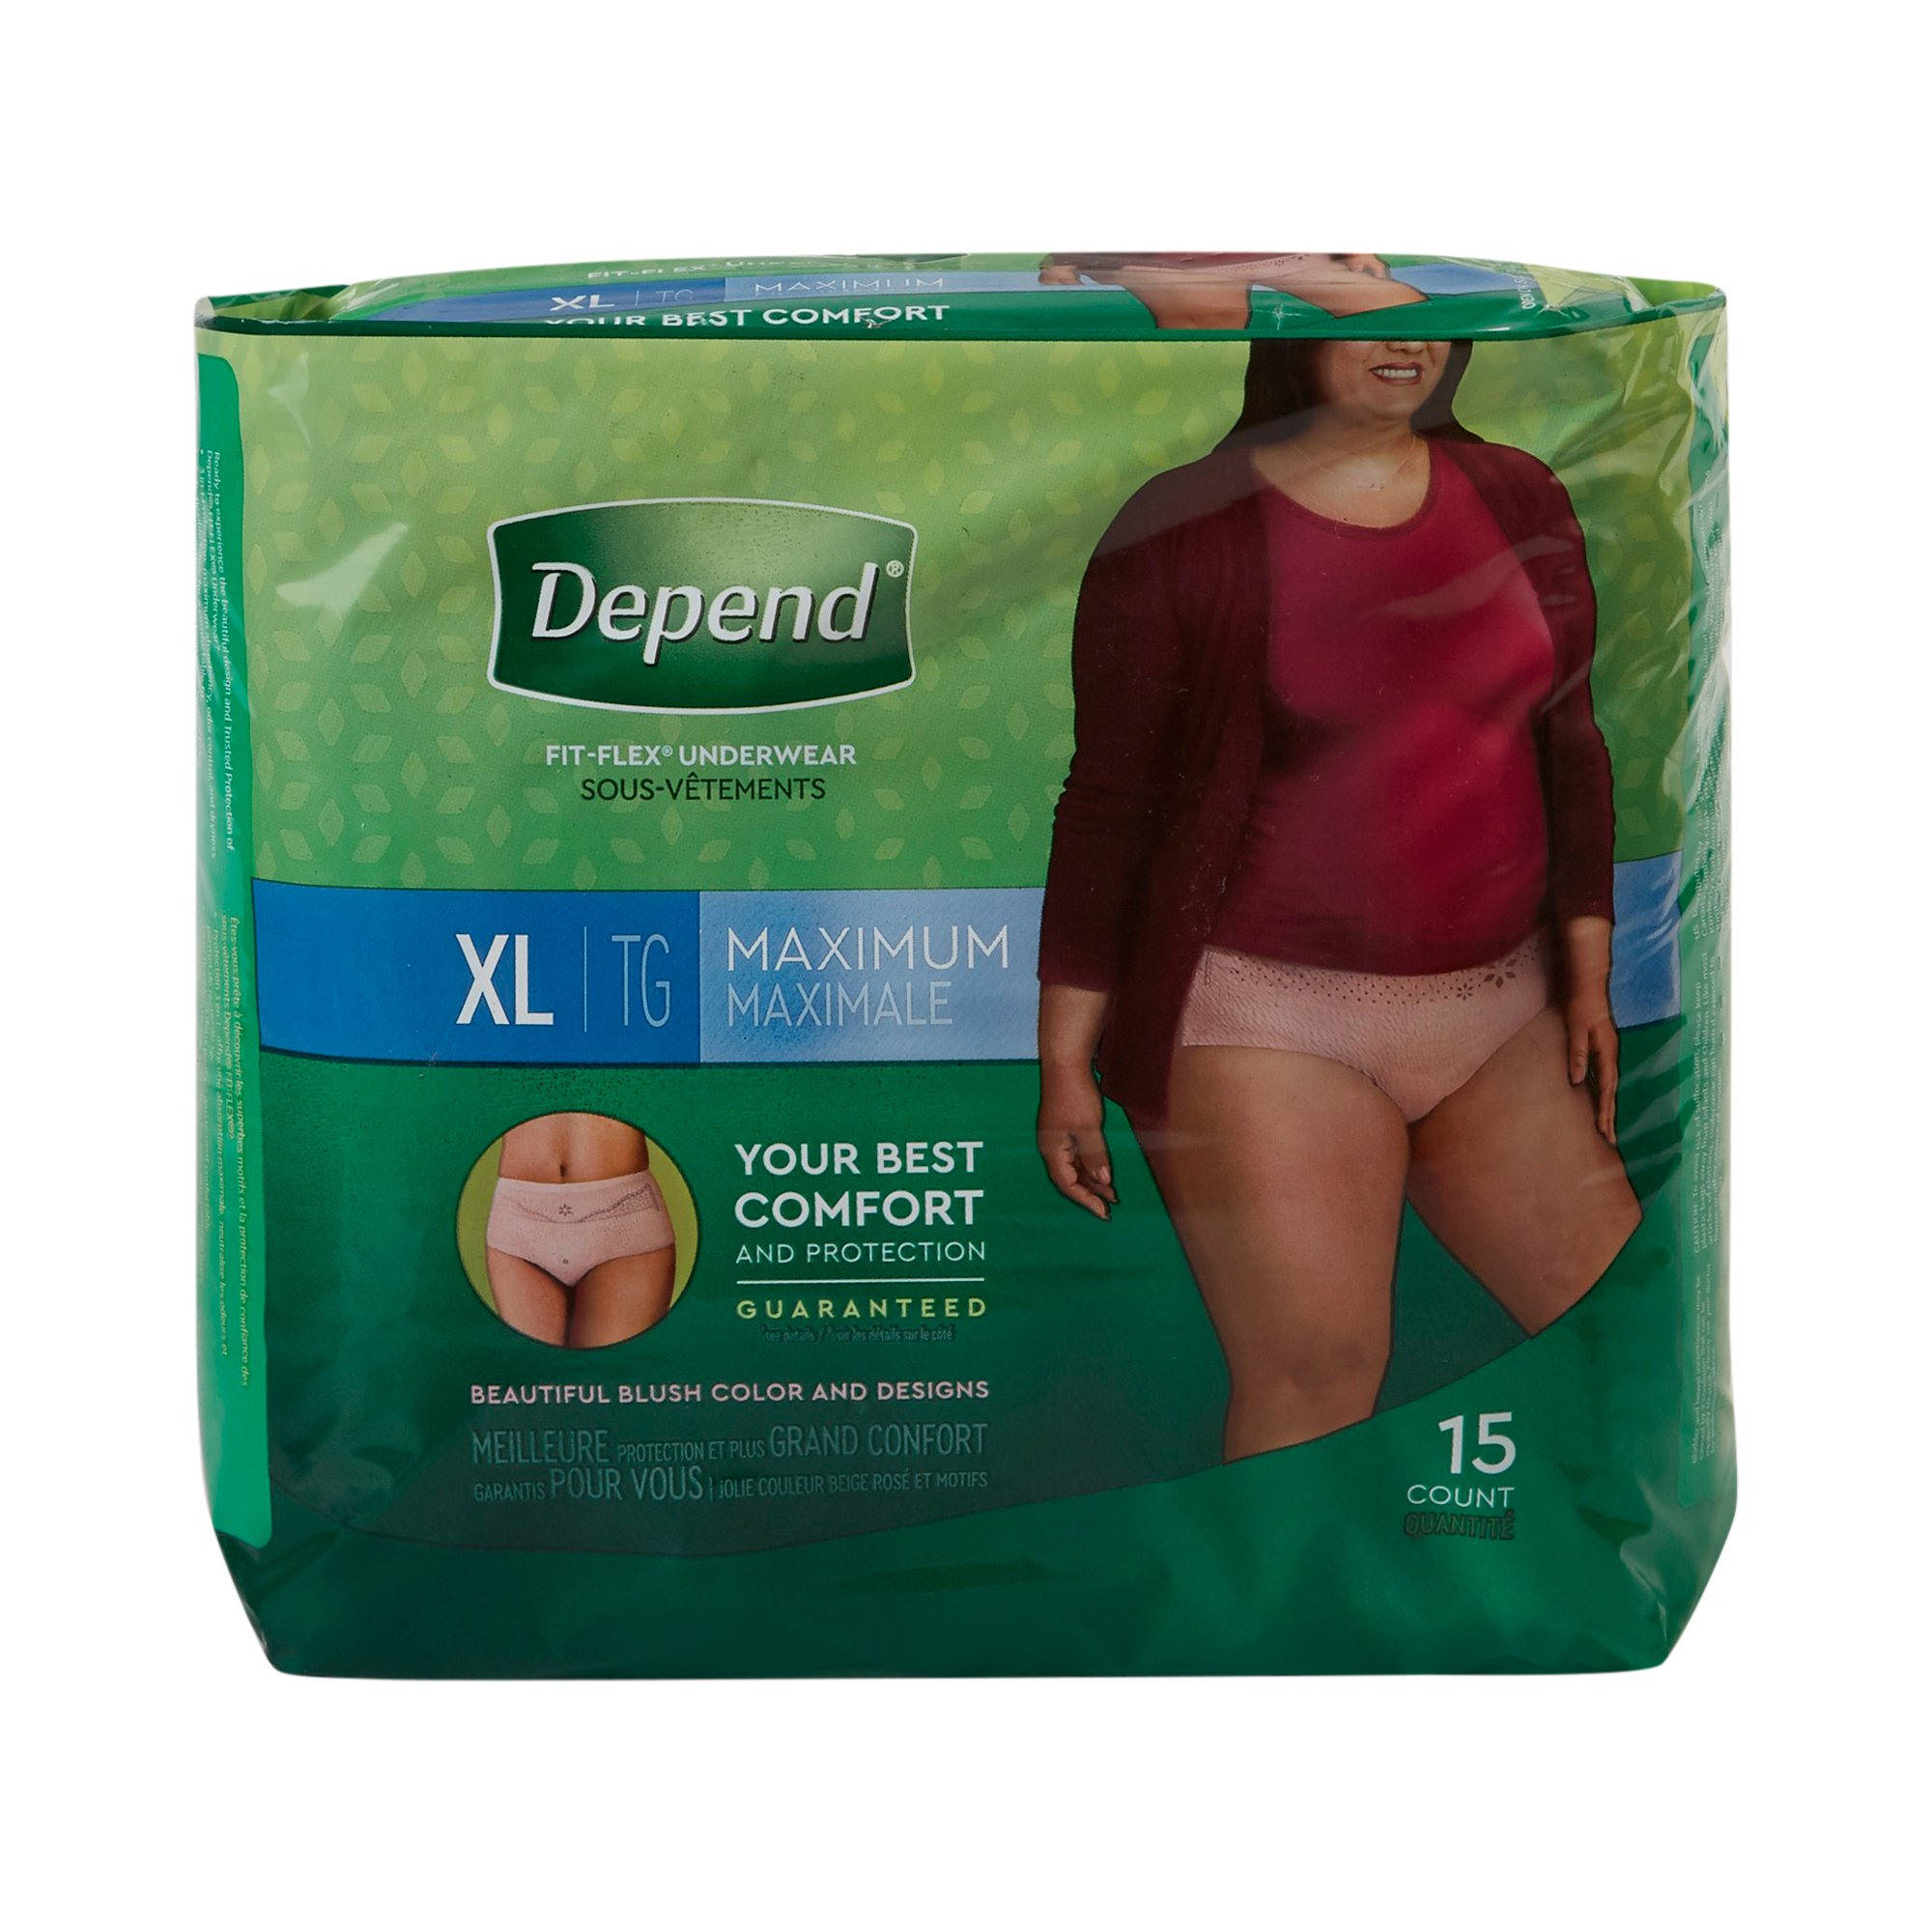 Depend Fit-Flex Underwear for Women Maximum Absorbancy